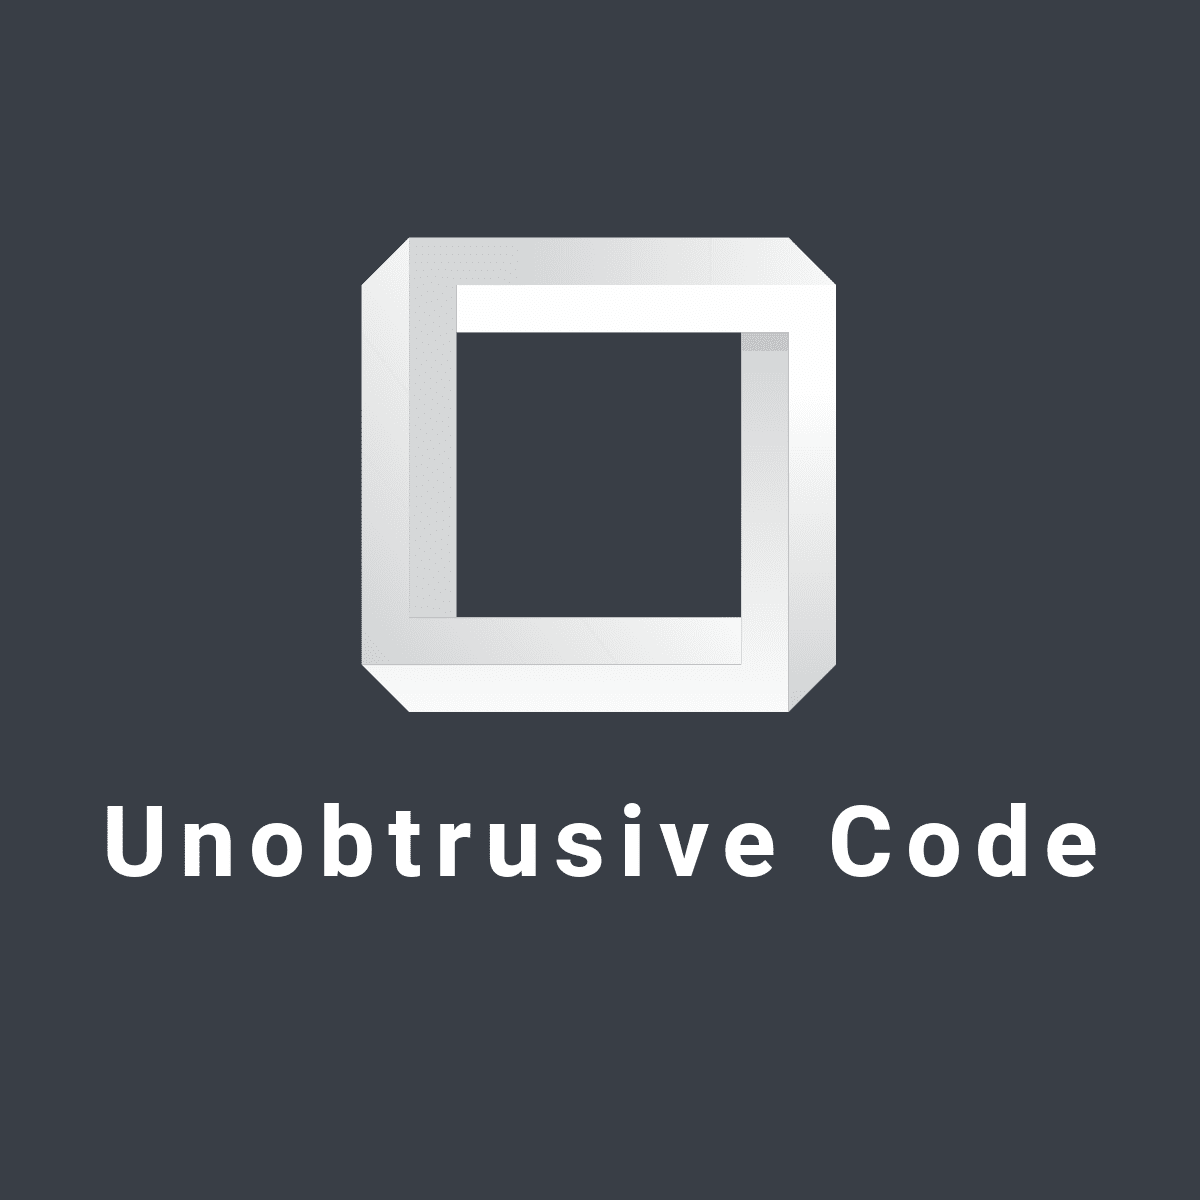 Unobtrusive Code